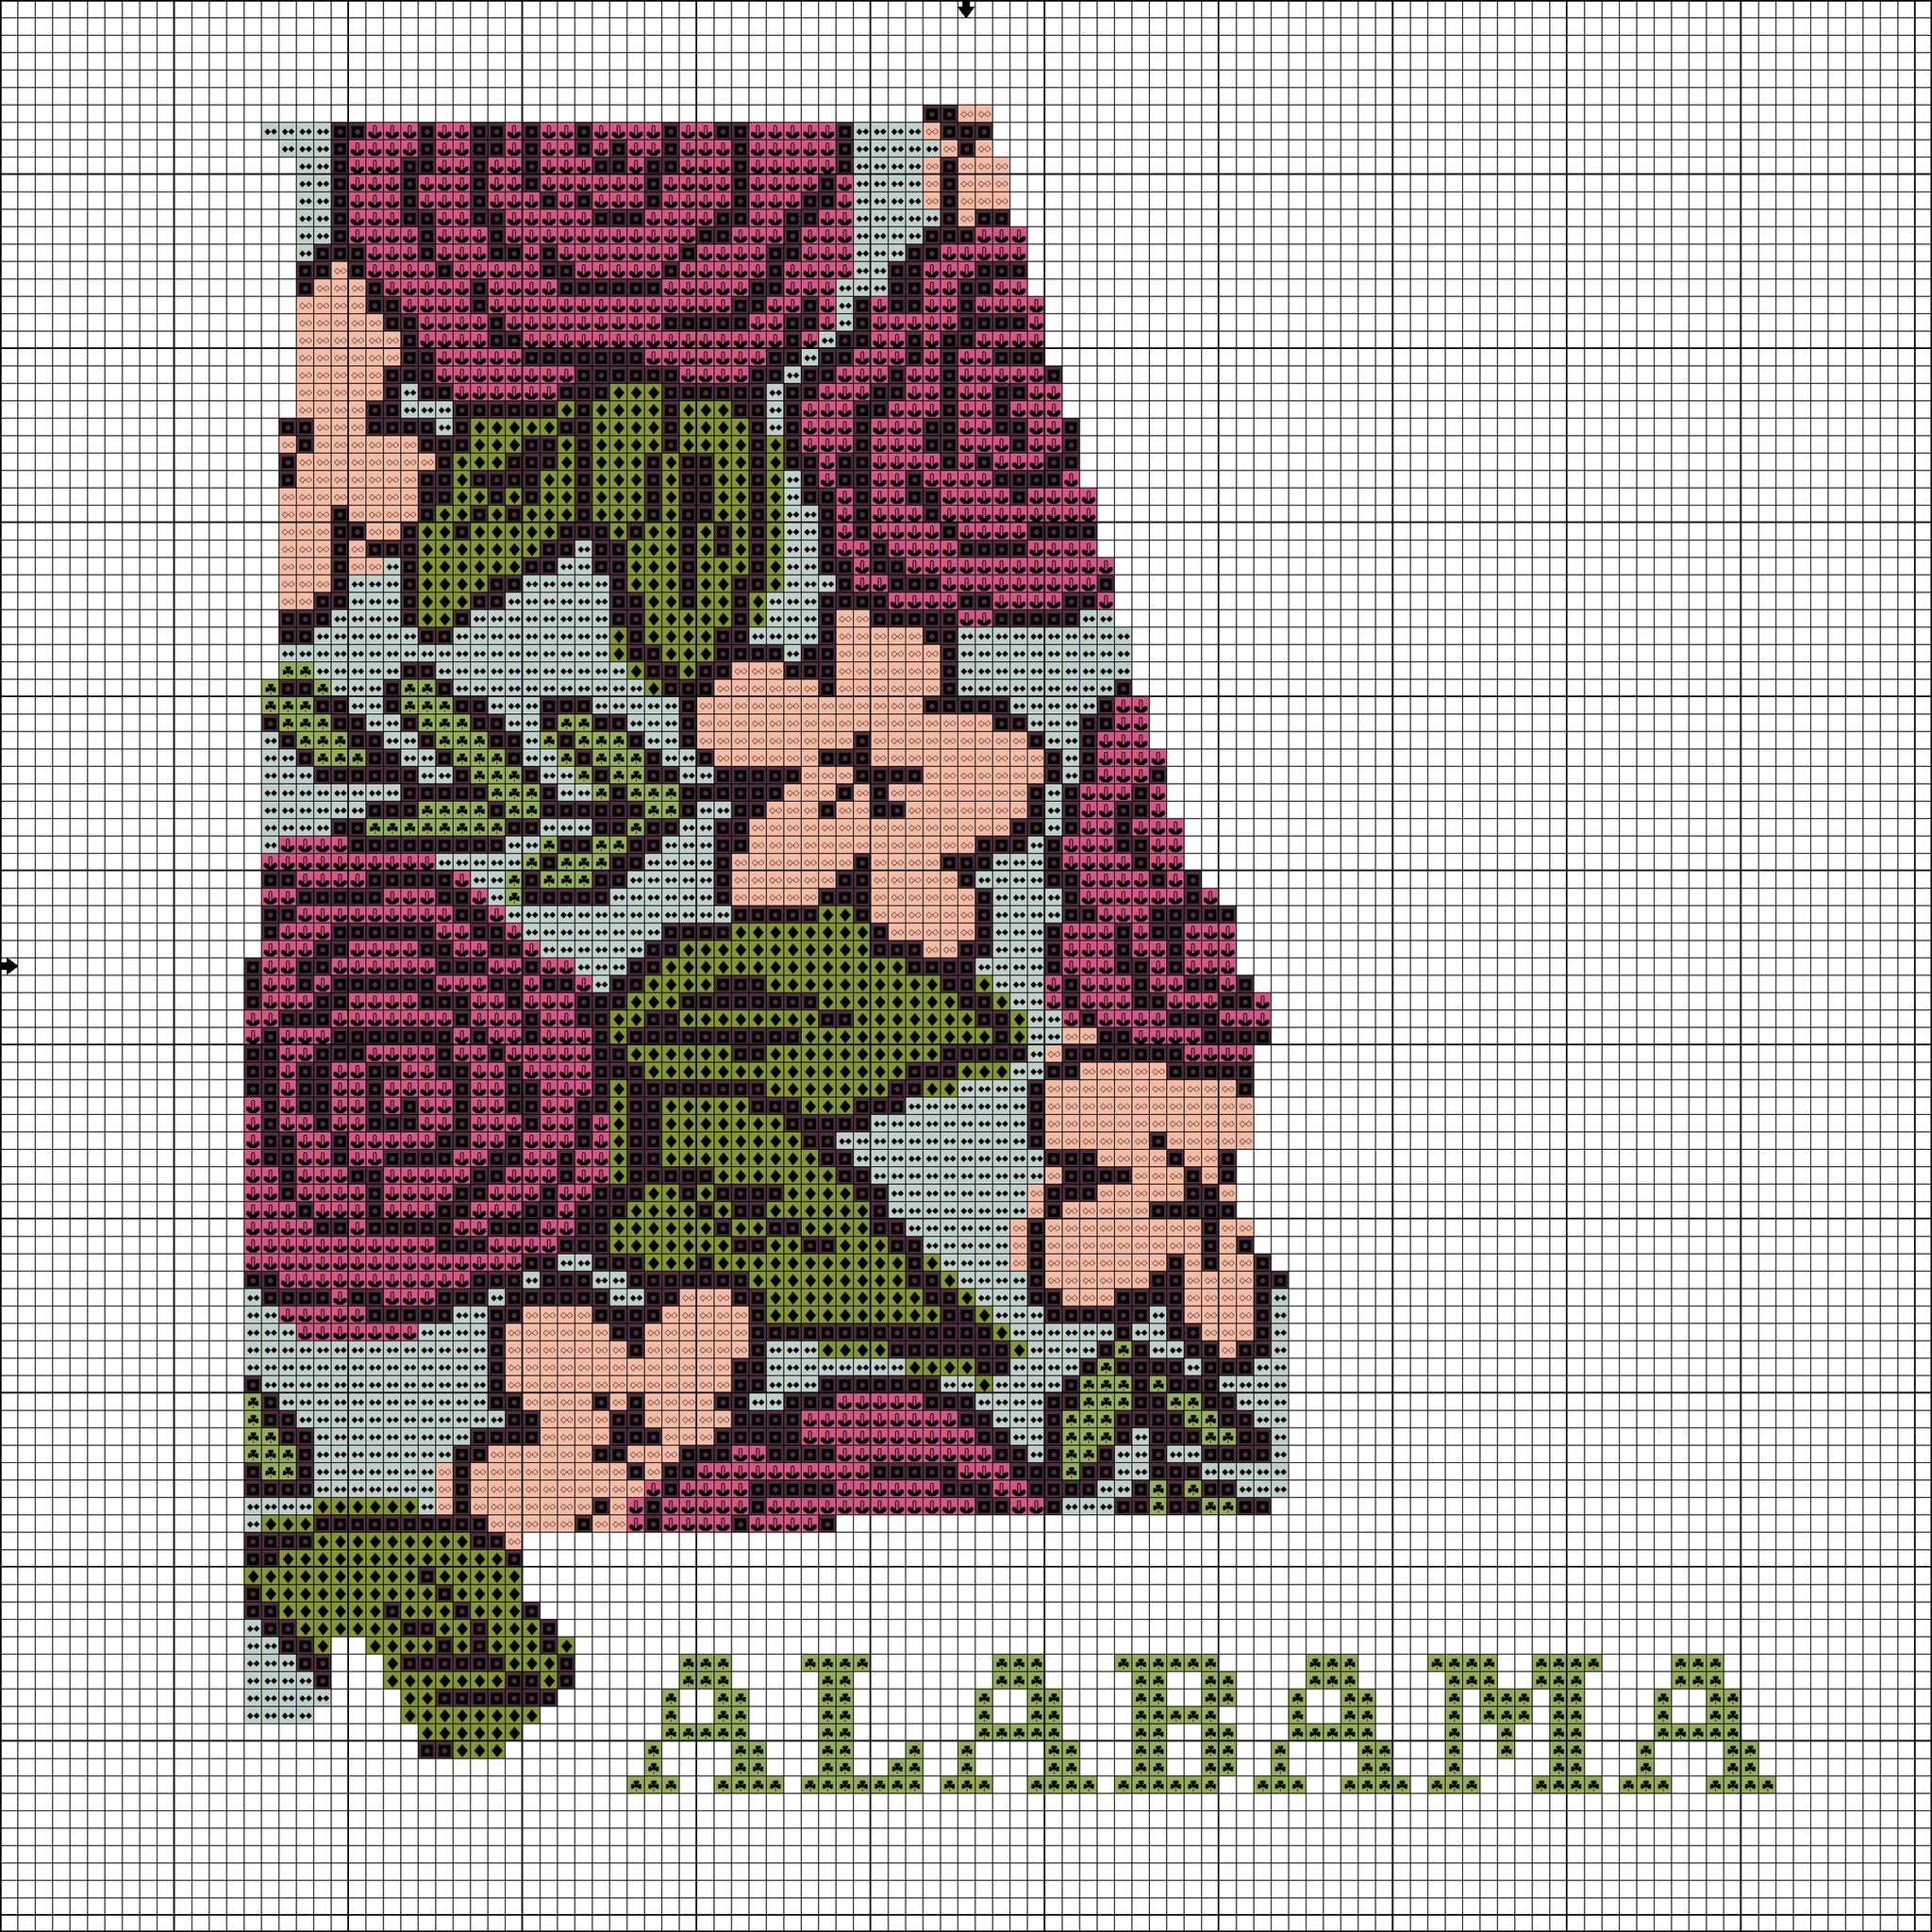 Alabama state map beautiful flower ornament cross stitch pattern  - Tango Stitch